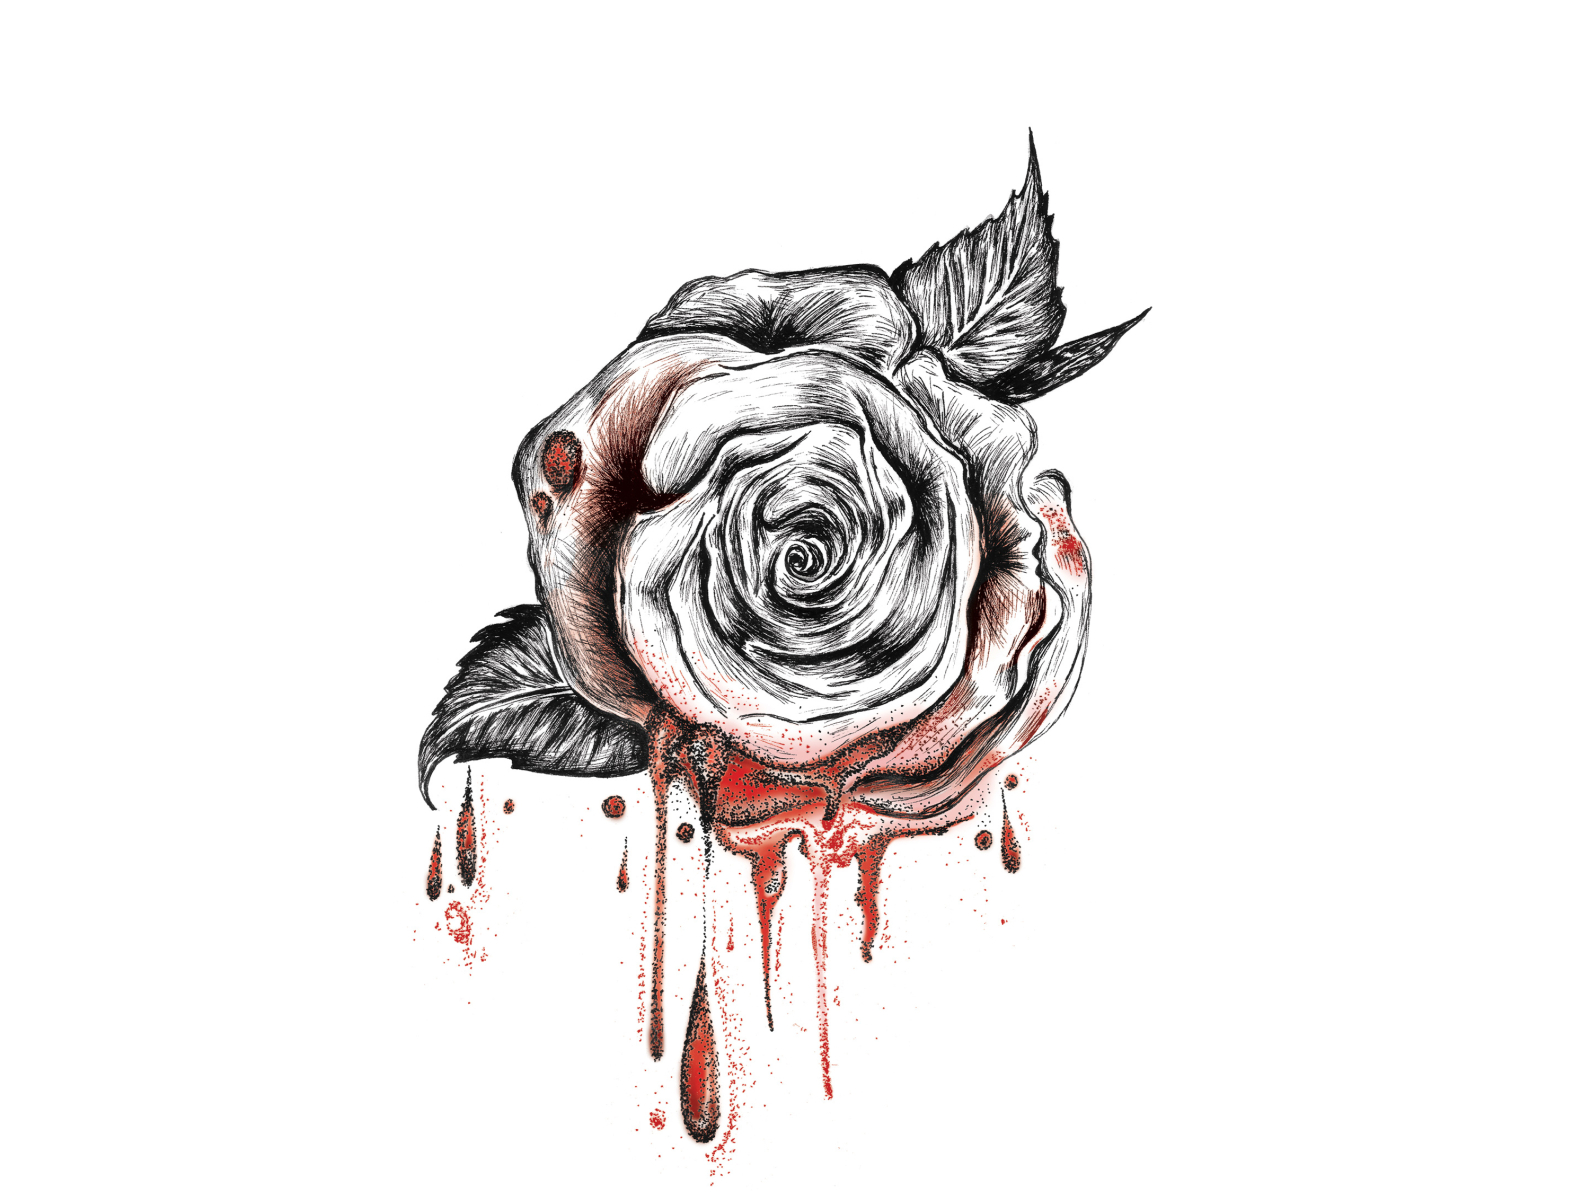 bleeding rose in hand